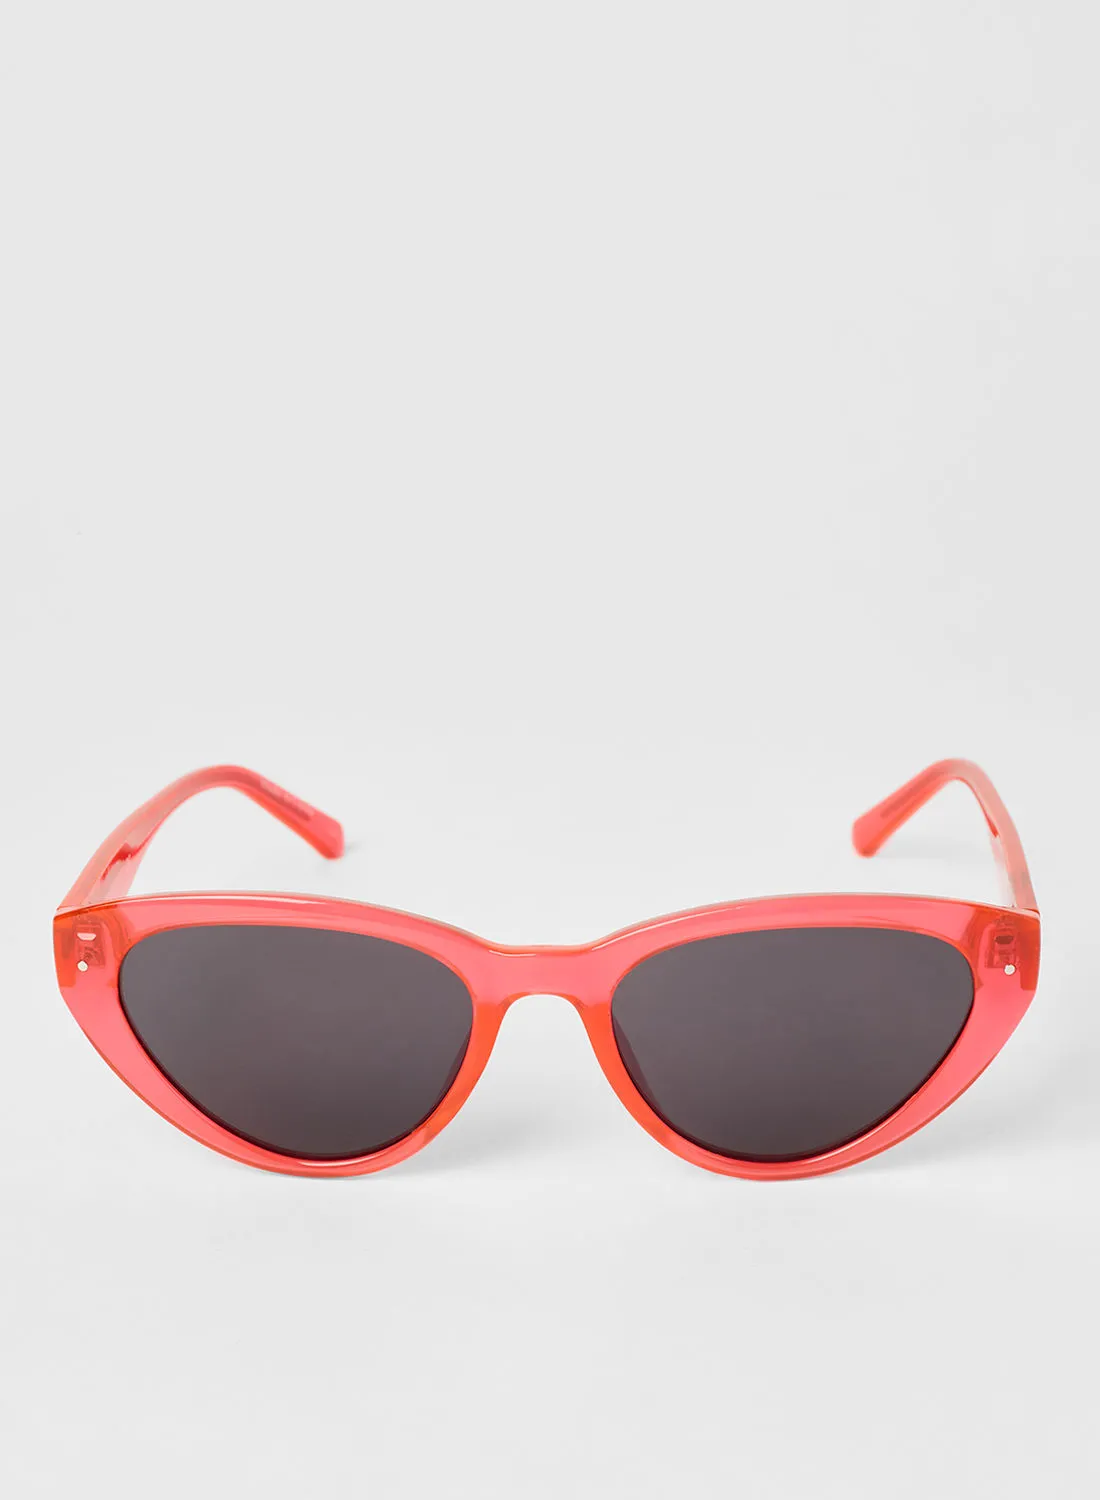 CALVIN KLEIN Women's Full Rimmed Cat-Eye Sunglasses - Lens Size: 54 mm